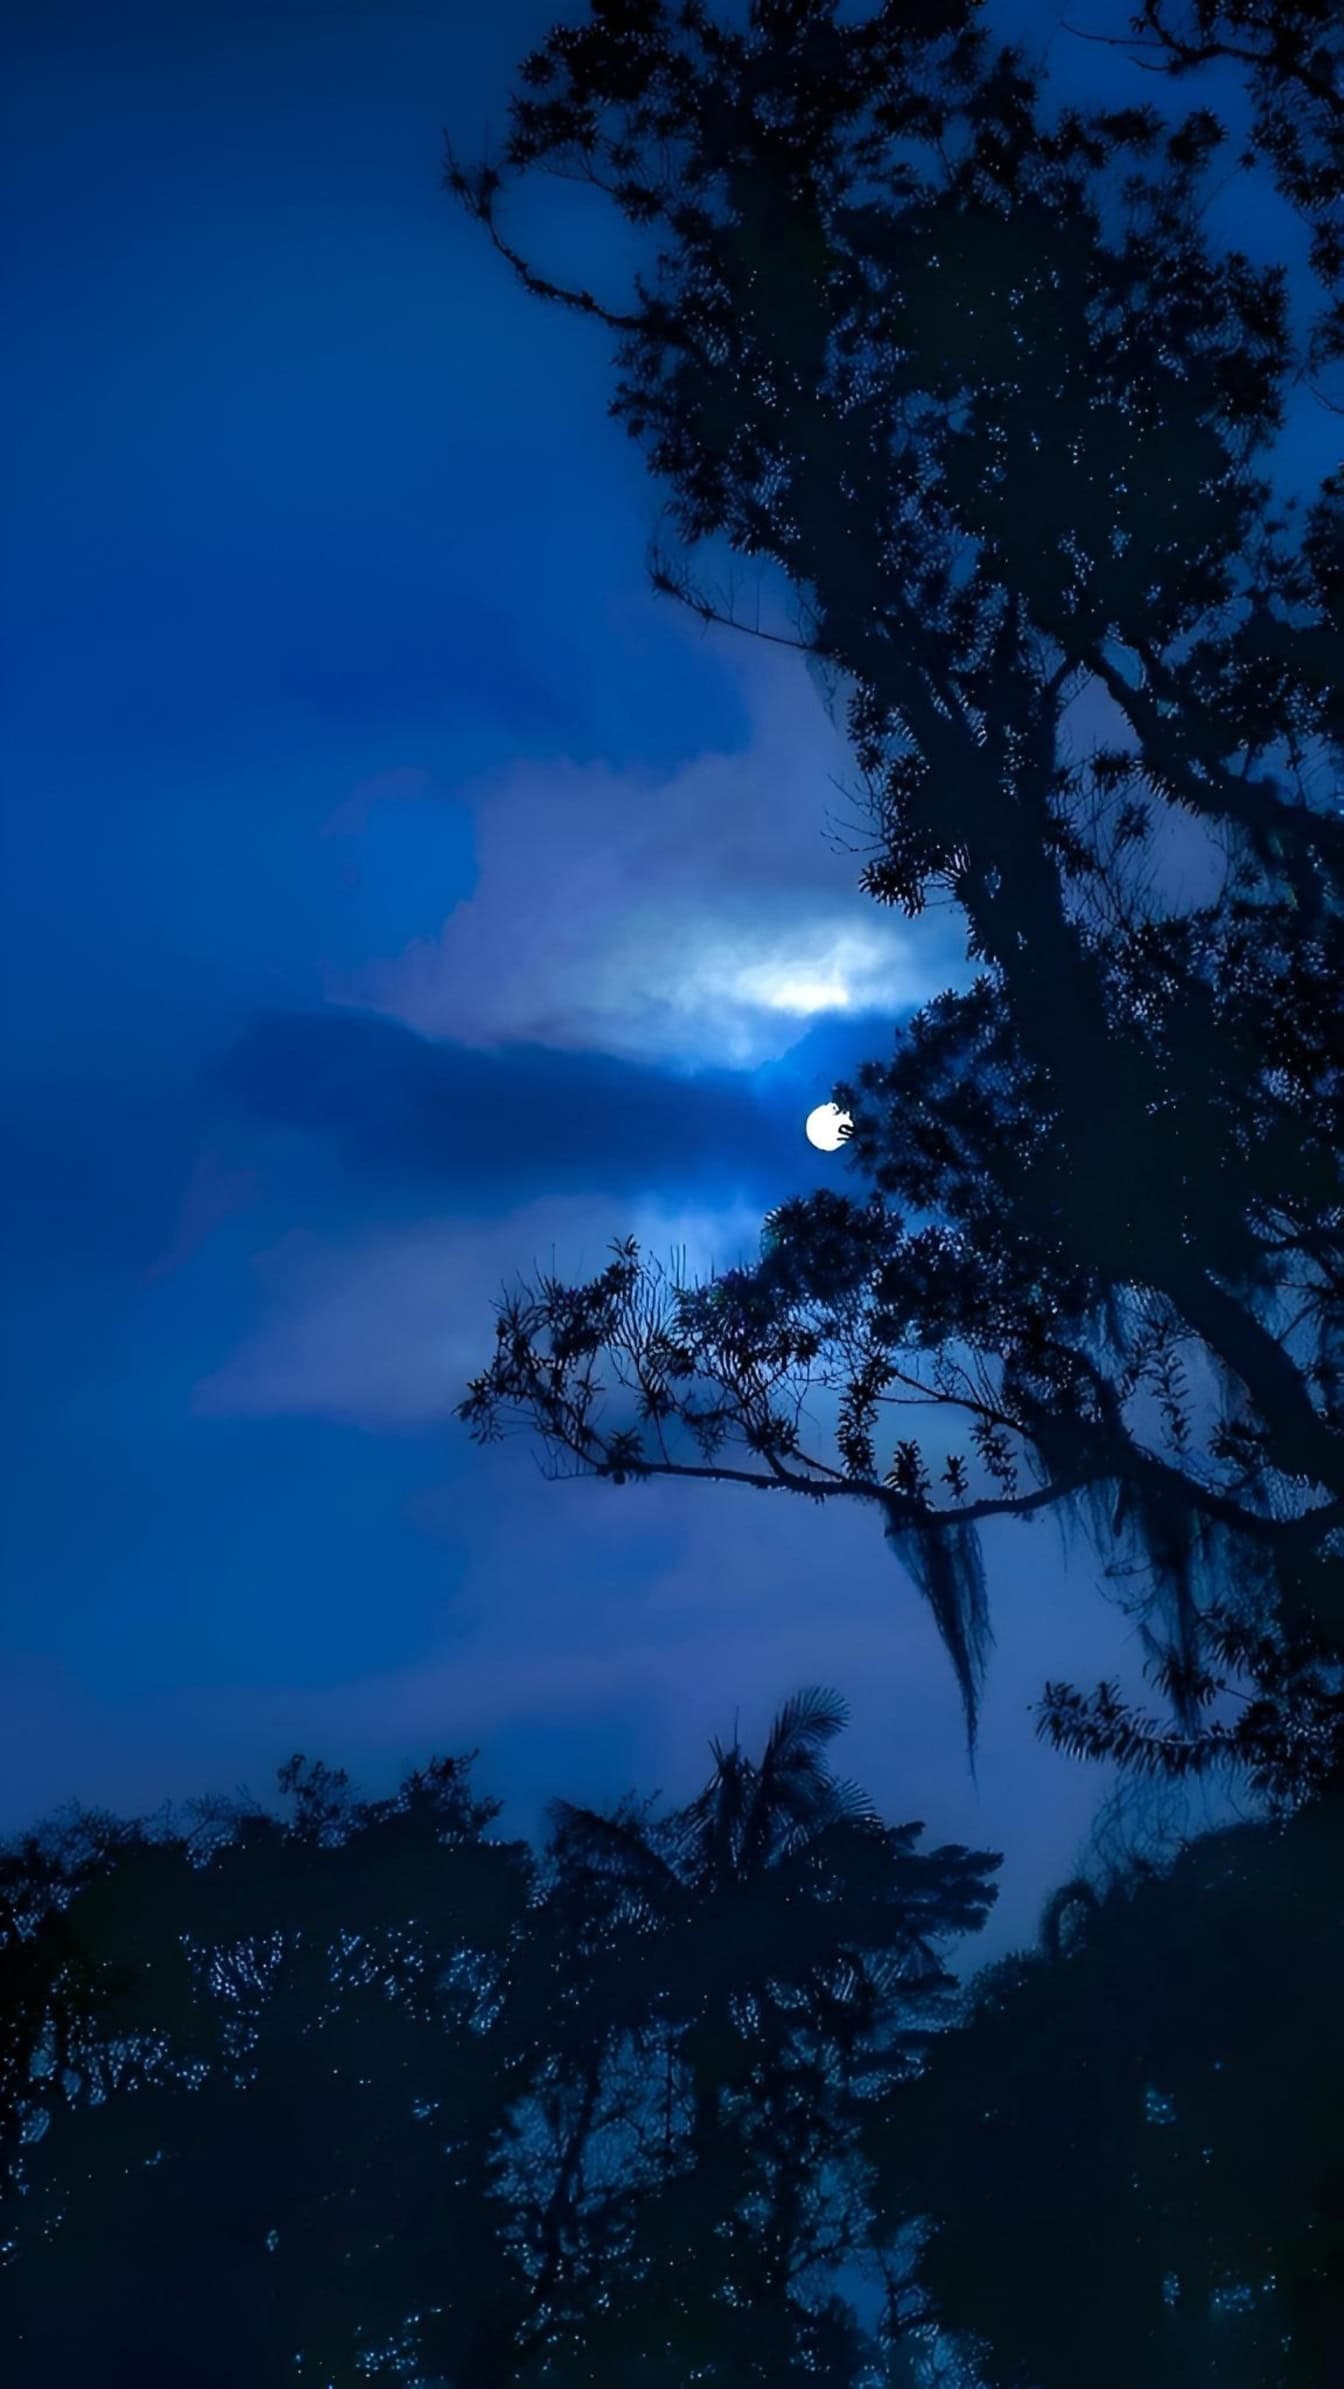 Μια σιλουέτα ενός δέντρου στο φως του φεγγαριού, ένα σεληνιακό τοπίο με ένα φεγγάρι στον μπλε νυχτερινό ουρανό